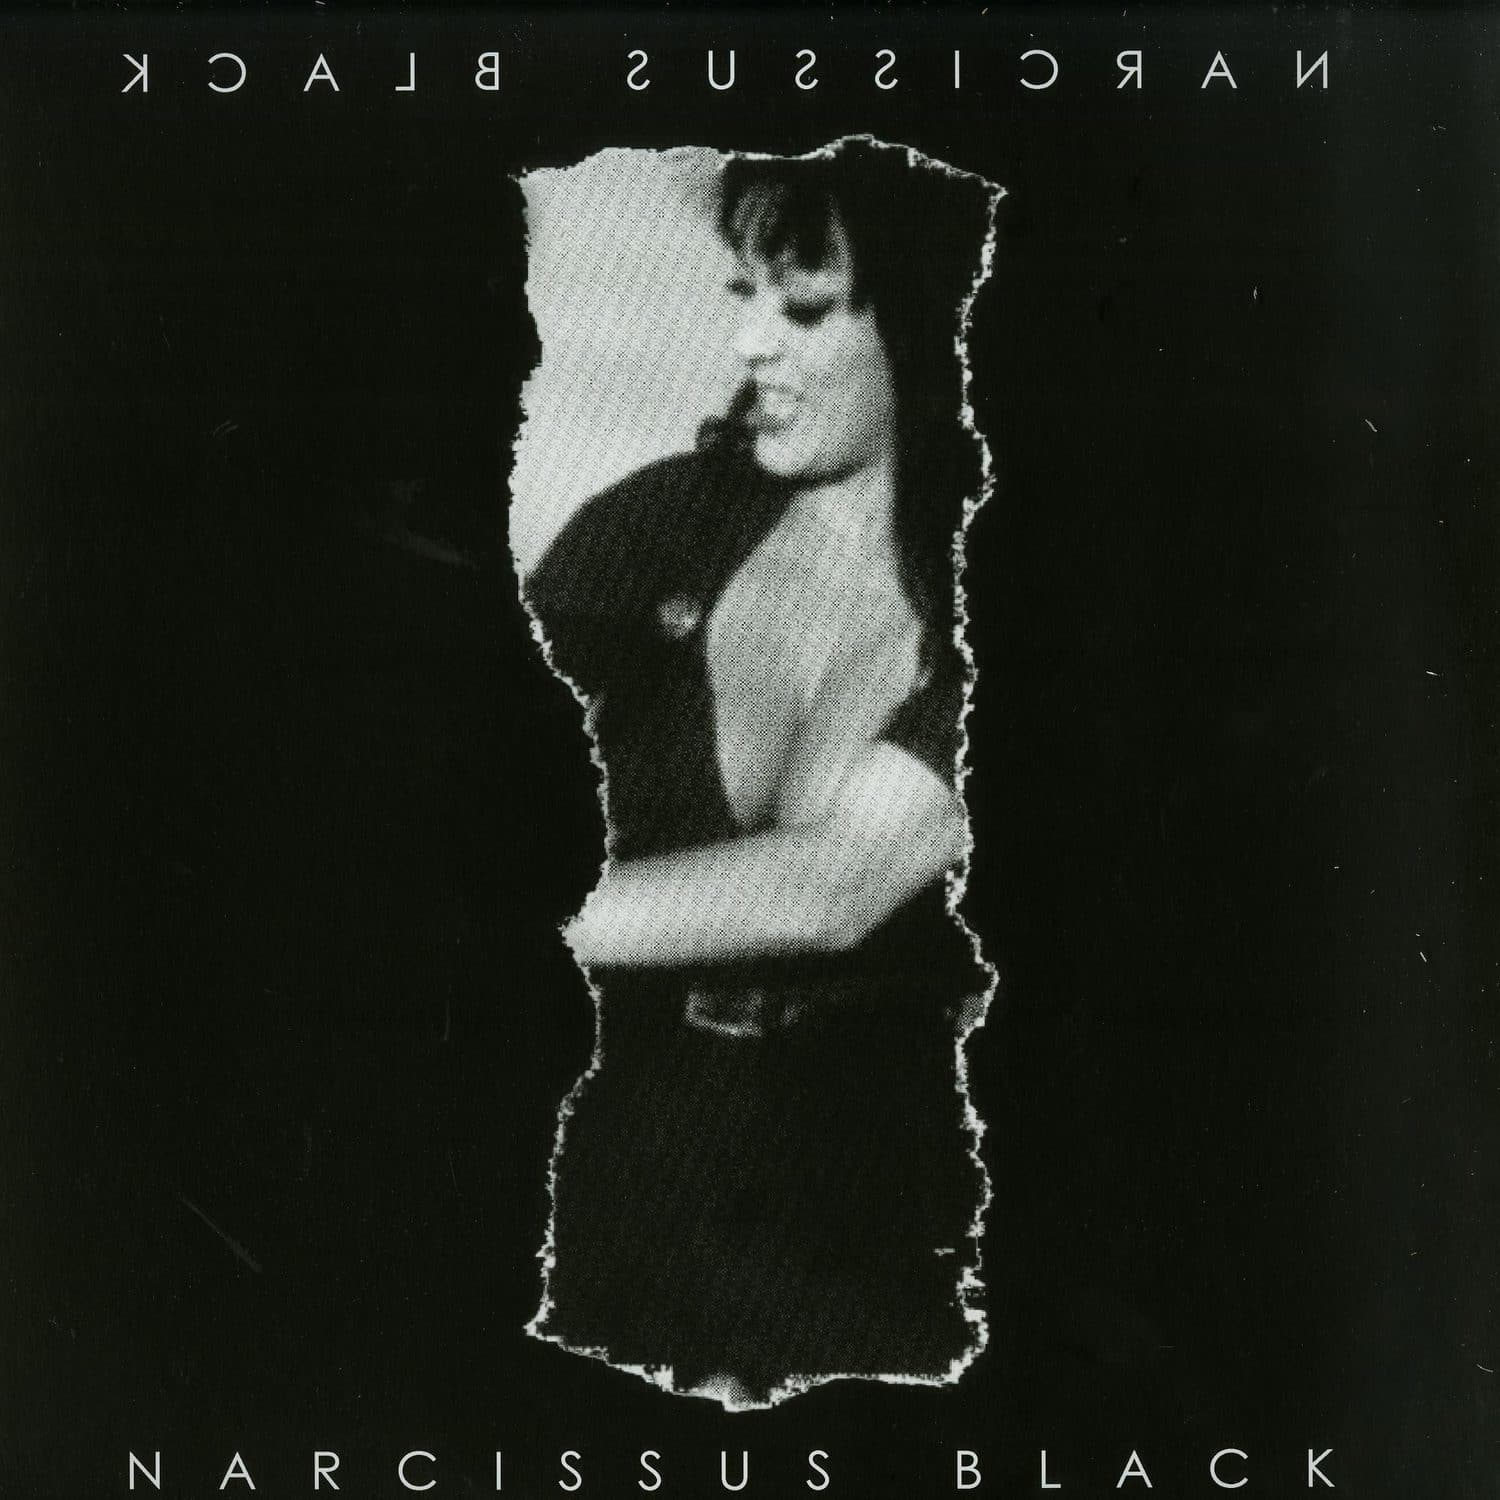 Black Narcissus - VARLA 